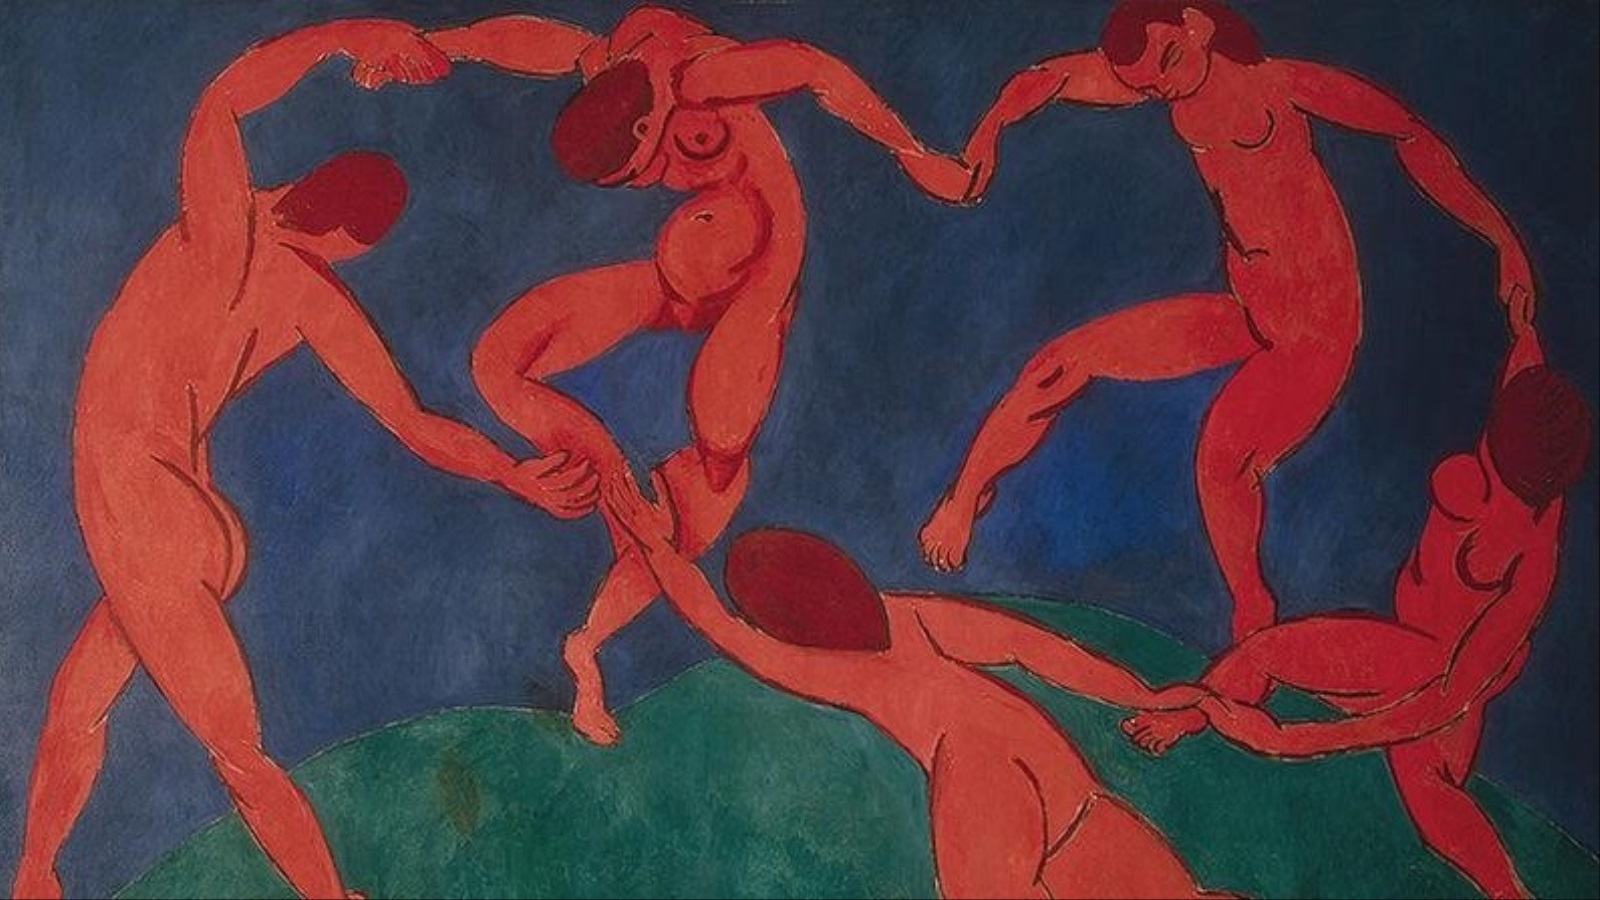 لوحة الرقص لـ هنري ماتيس - 1910م.